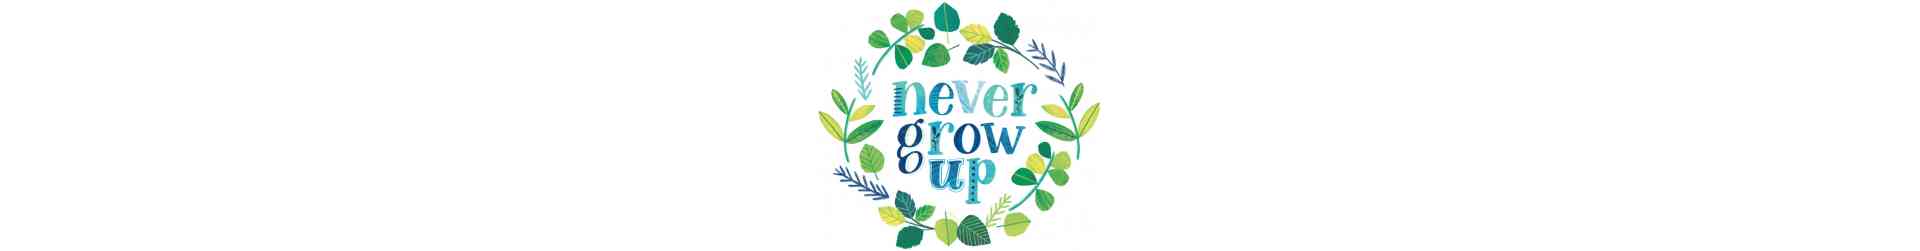 NEVER GROW UP